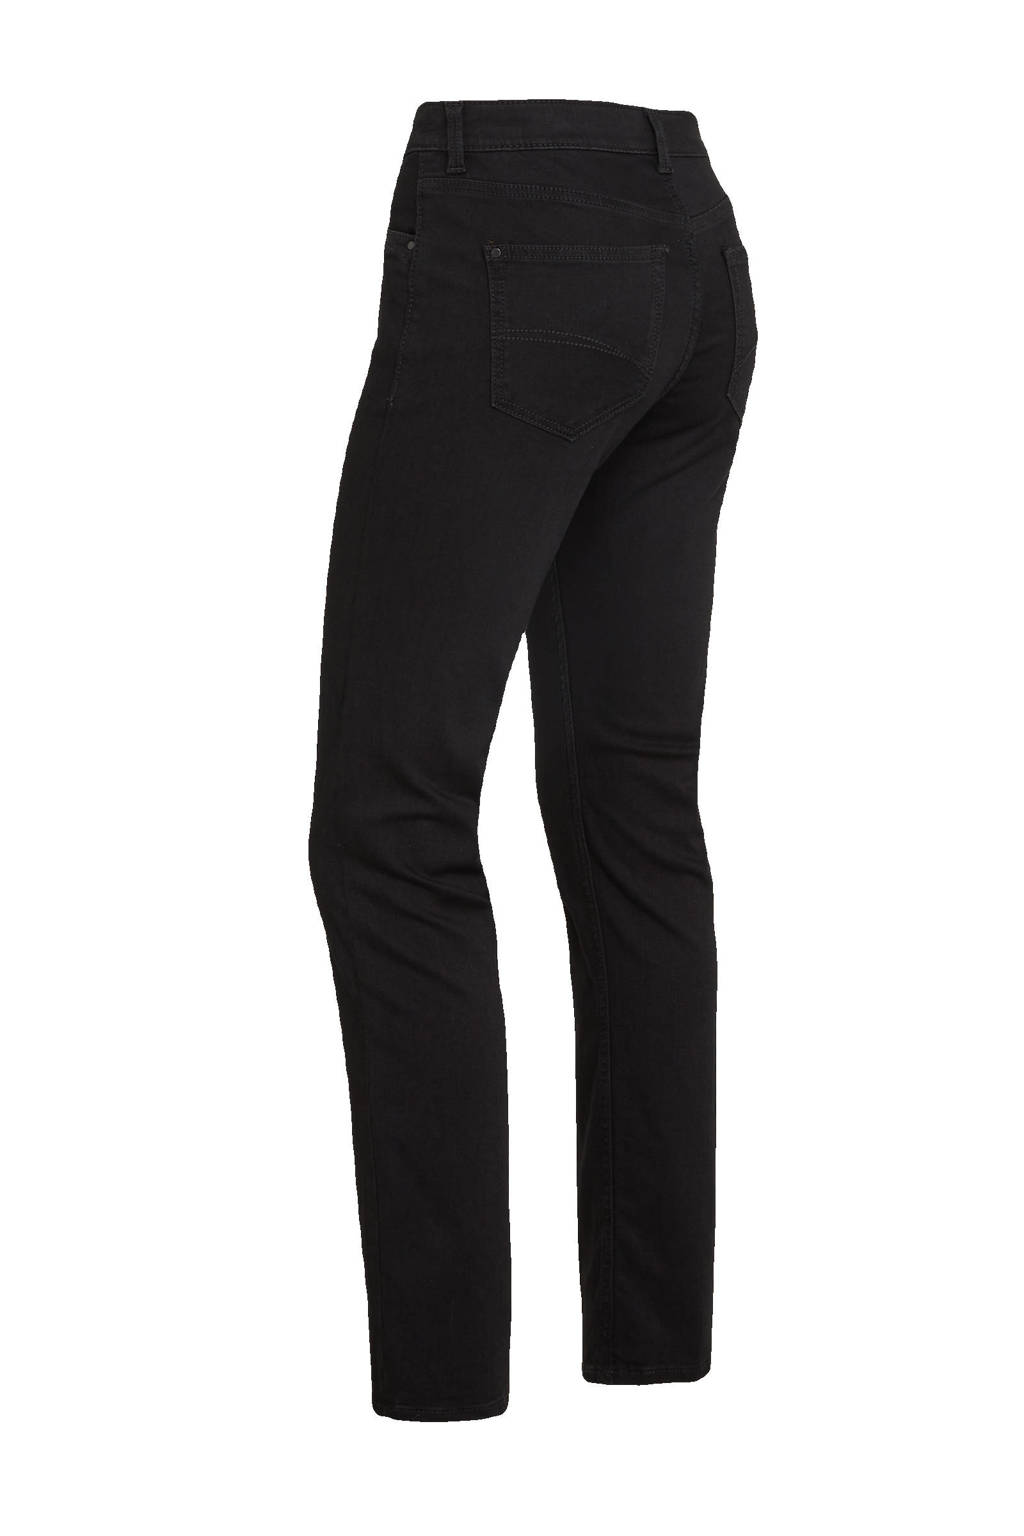 c-a-the-denim-straight-fit-jeans-zwart-zwart.jpg?w=1024